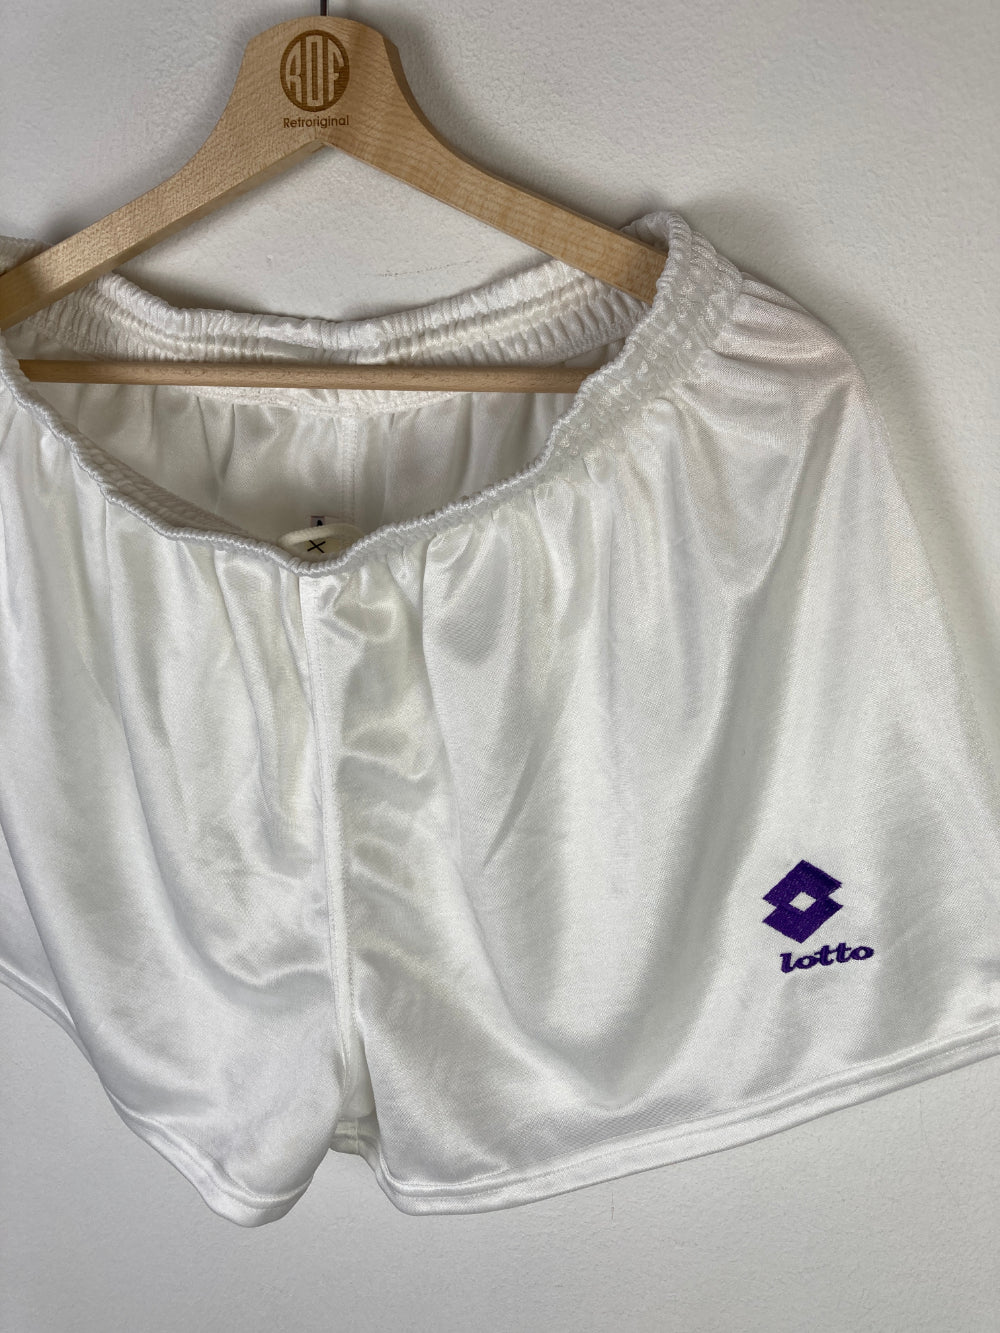 
                  
                    Original Fiorentina ACF Home Short 1992-1993 - XL
                  
                